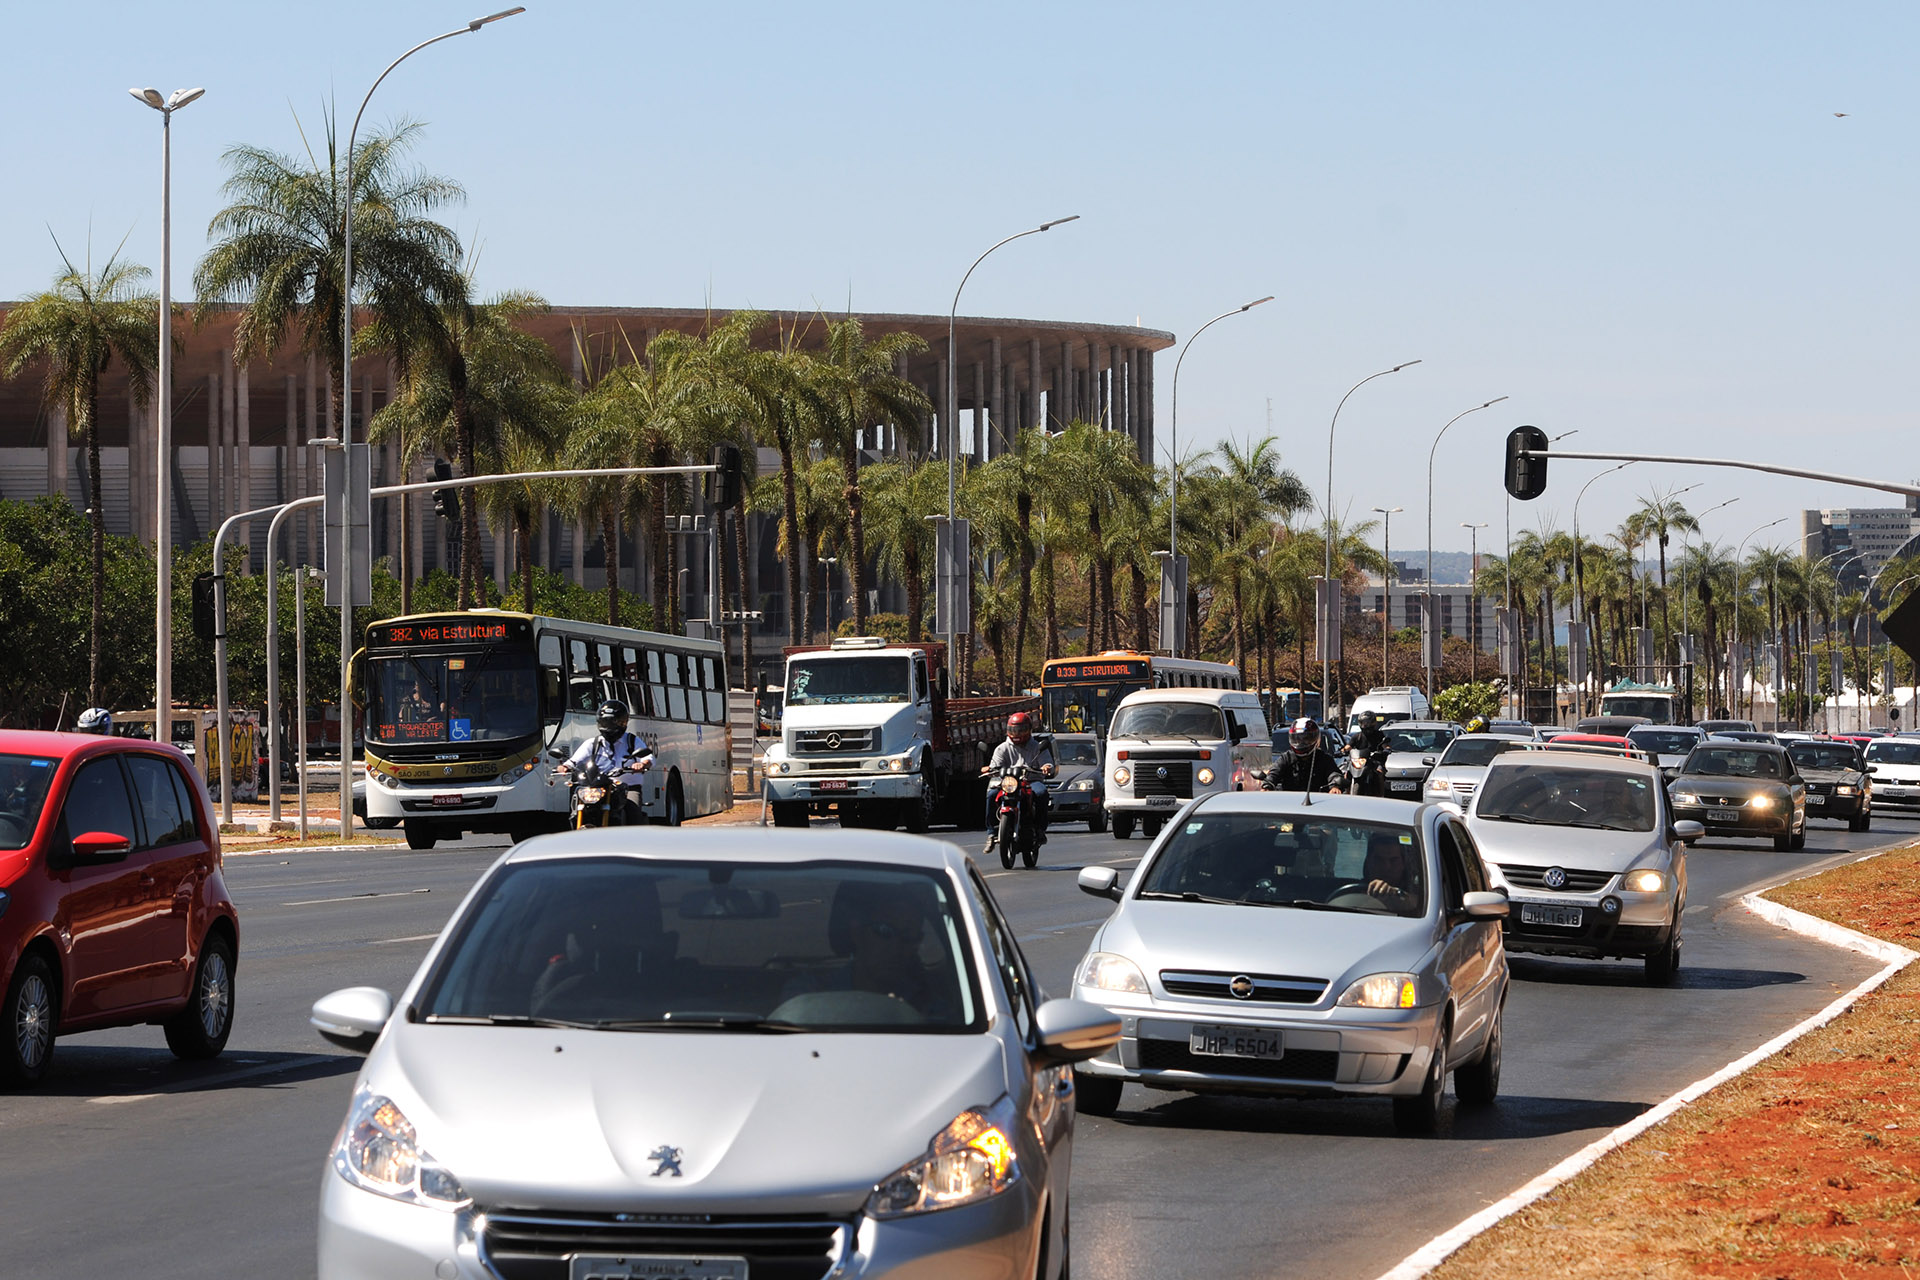 Em dias de jogos de futebol da Olimpíada em Brasília, haverá restrições e intervenções em vias e estacionamentos na área central do Plano Piloto.